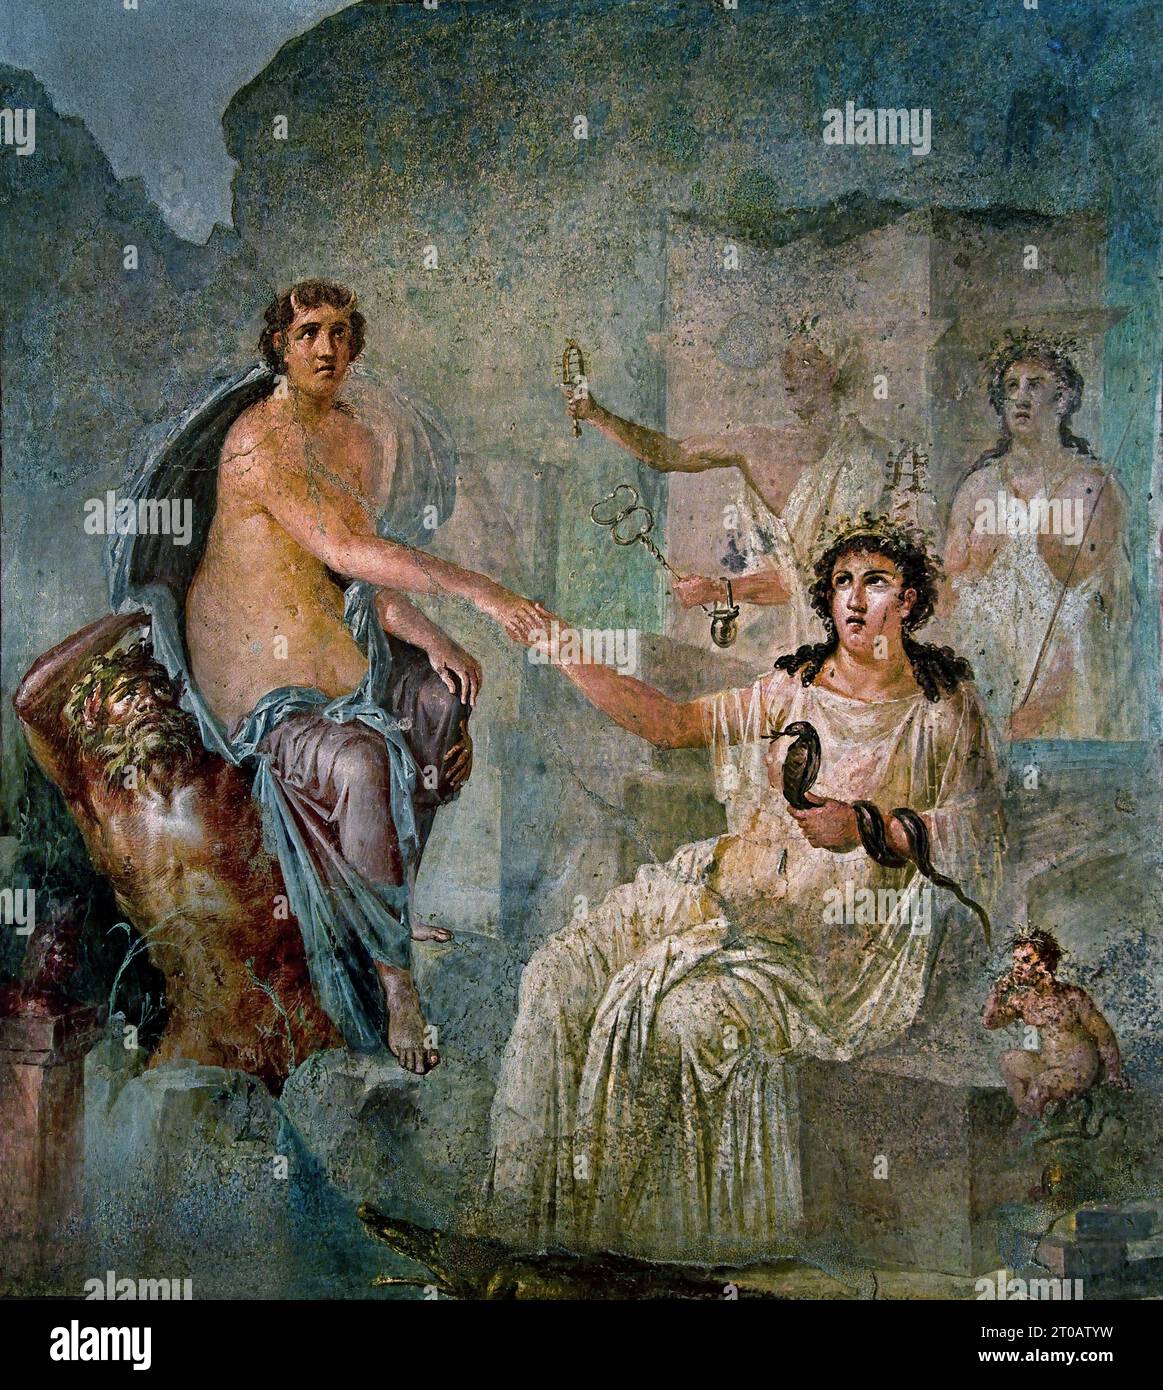 Jupiter e io. La città romana di fresco Pompei si trova vicino a Napoli, nella regione Campania. Pompei fu sepolta sotto 4-6 m di cenere vulcanica e pomice nell'eruzione del Vesuvio nel 79 d.C. Italia Foto Stock